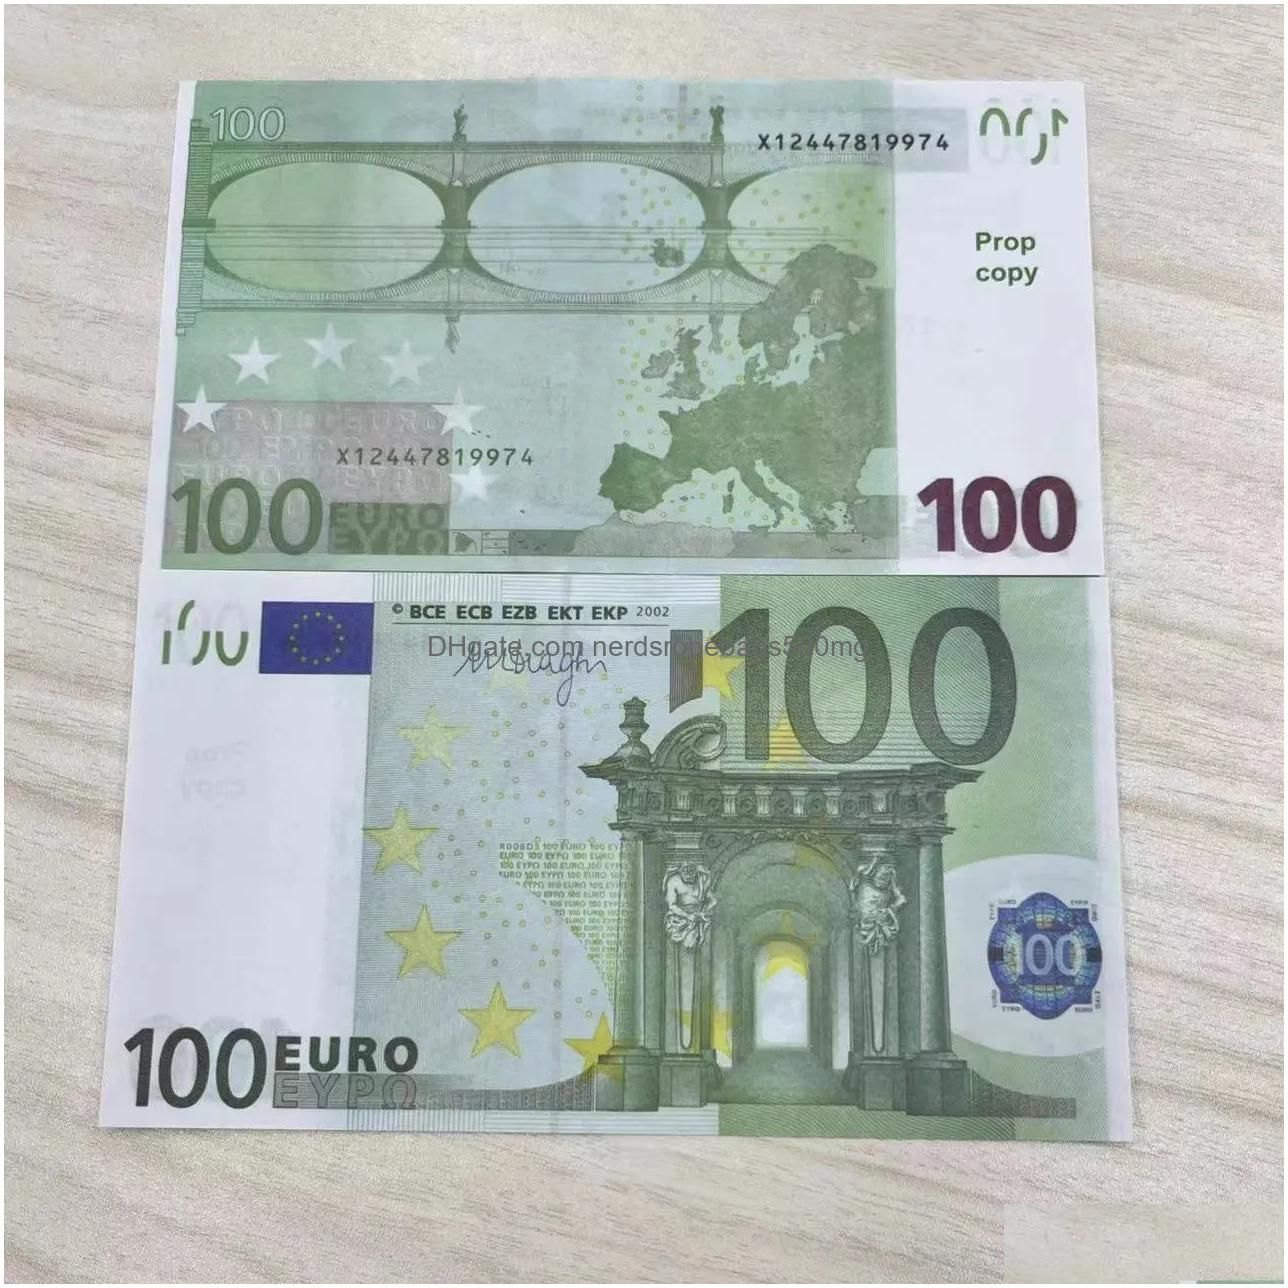 100 Euro